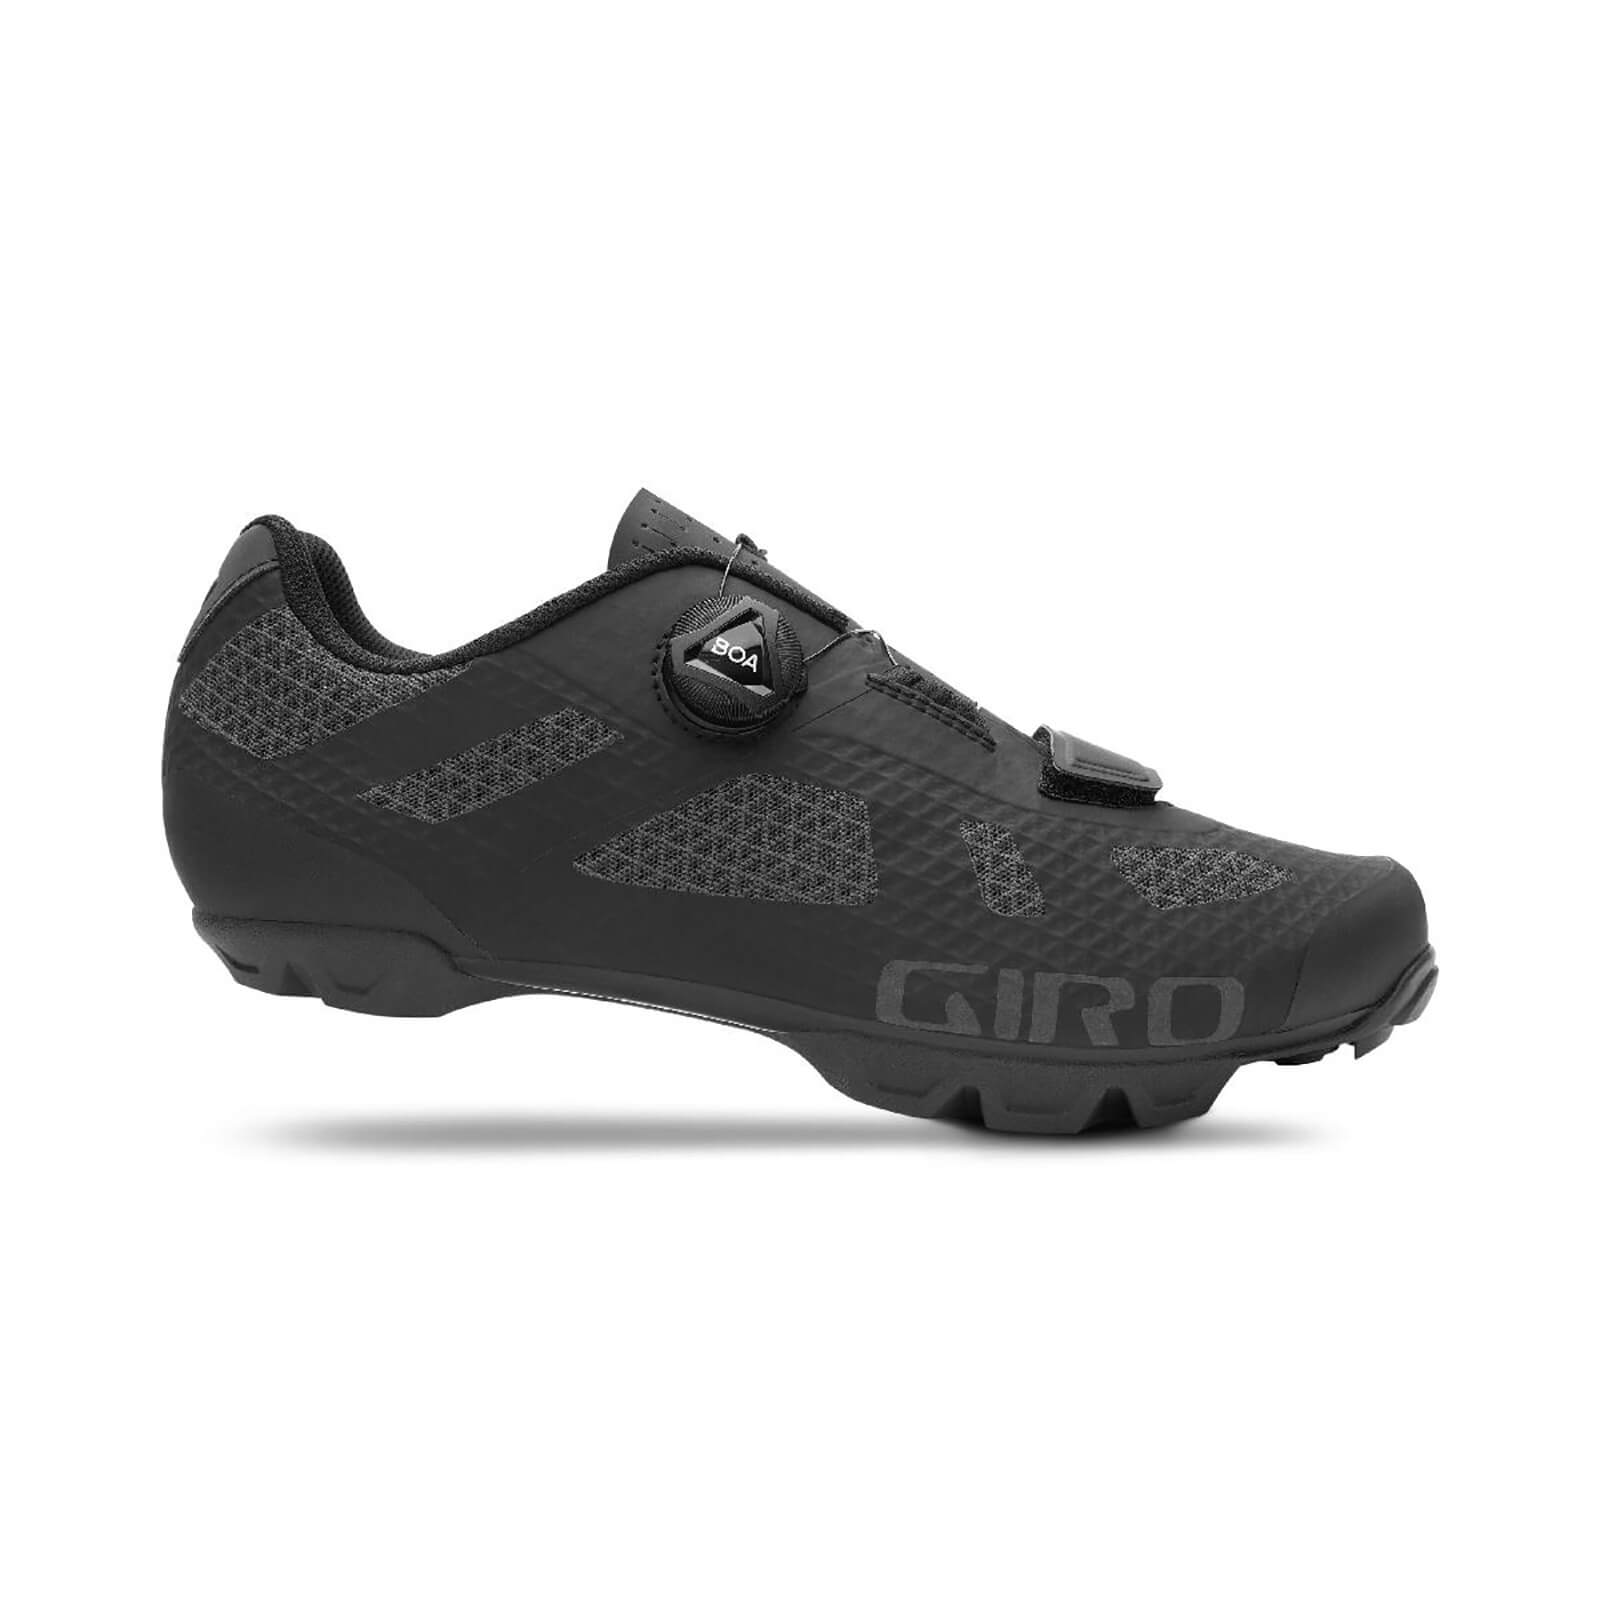 Giro Rincon MTB Shoes - EU 46 - Black